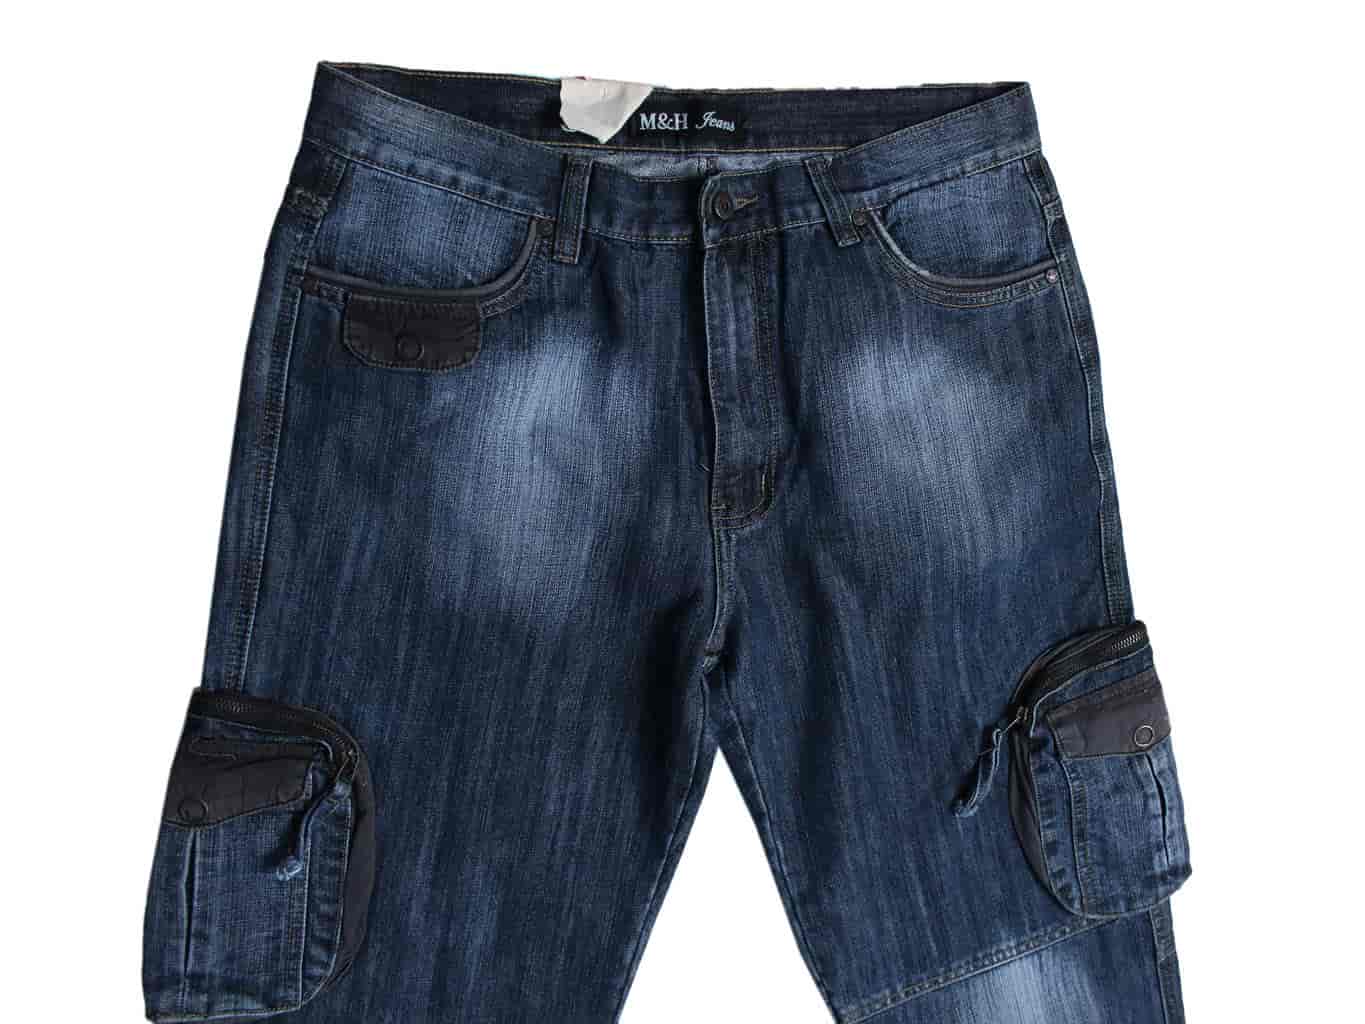 Карманы на мужских джинсах сзади